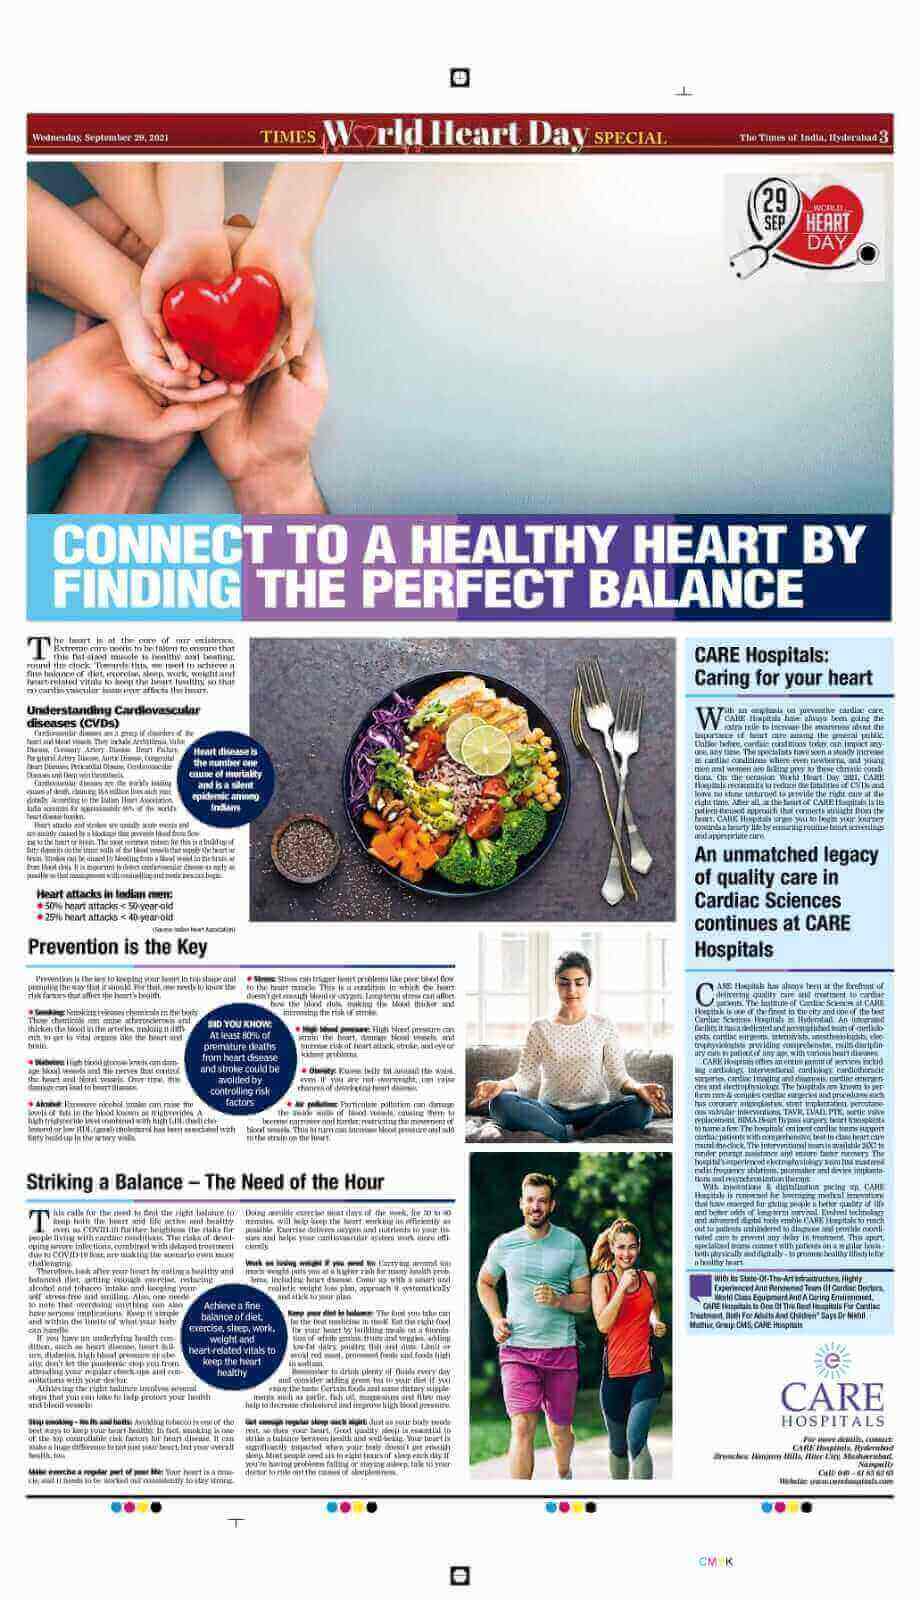 निरोगी हृदयाशी कनेक्ट व्हा. टाइम्स ऑफ इंडियाचा जागतिक हृदय दिन 2021 च्या निमित्ताने लेख